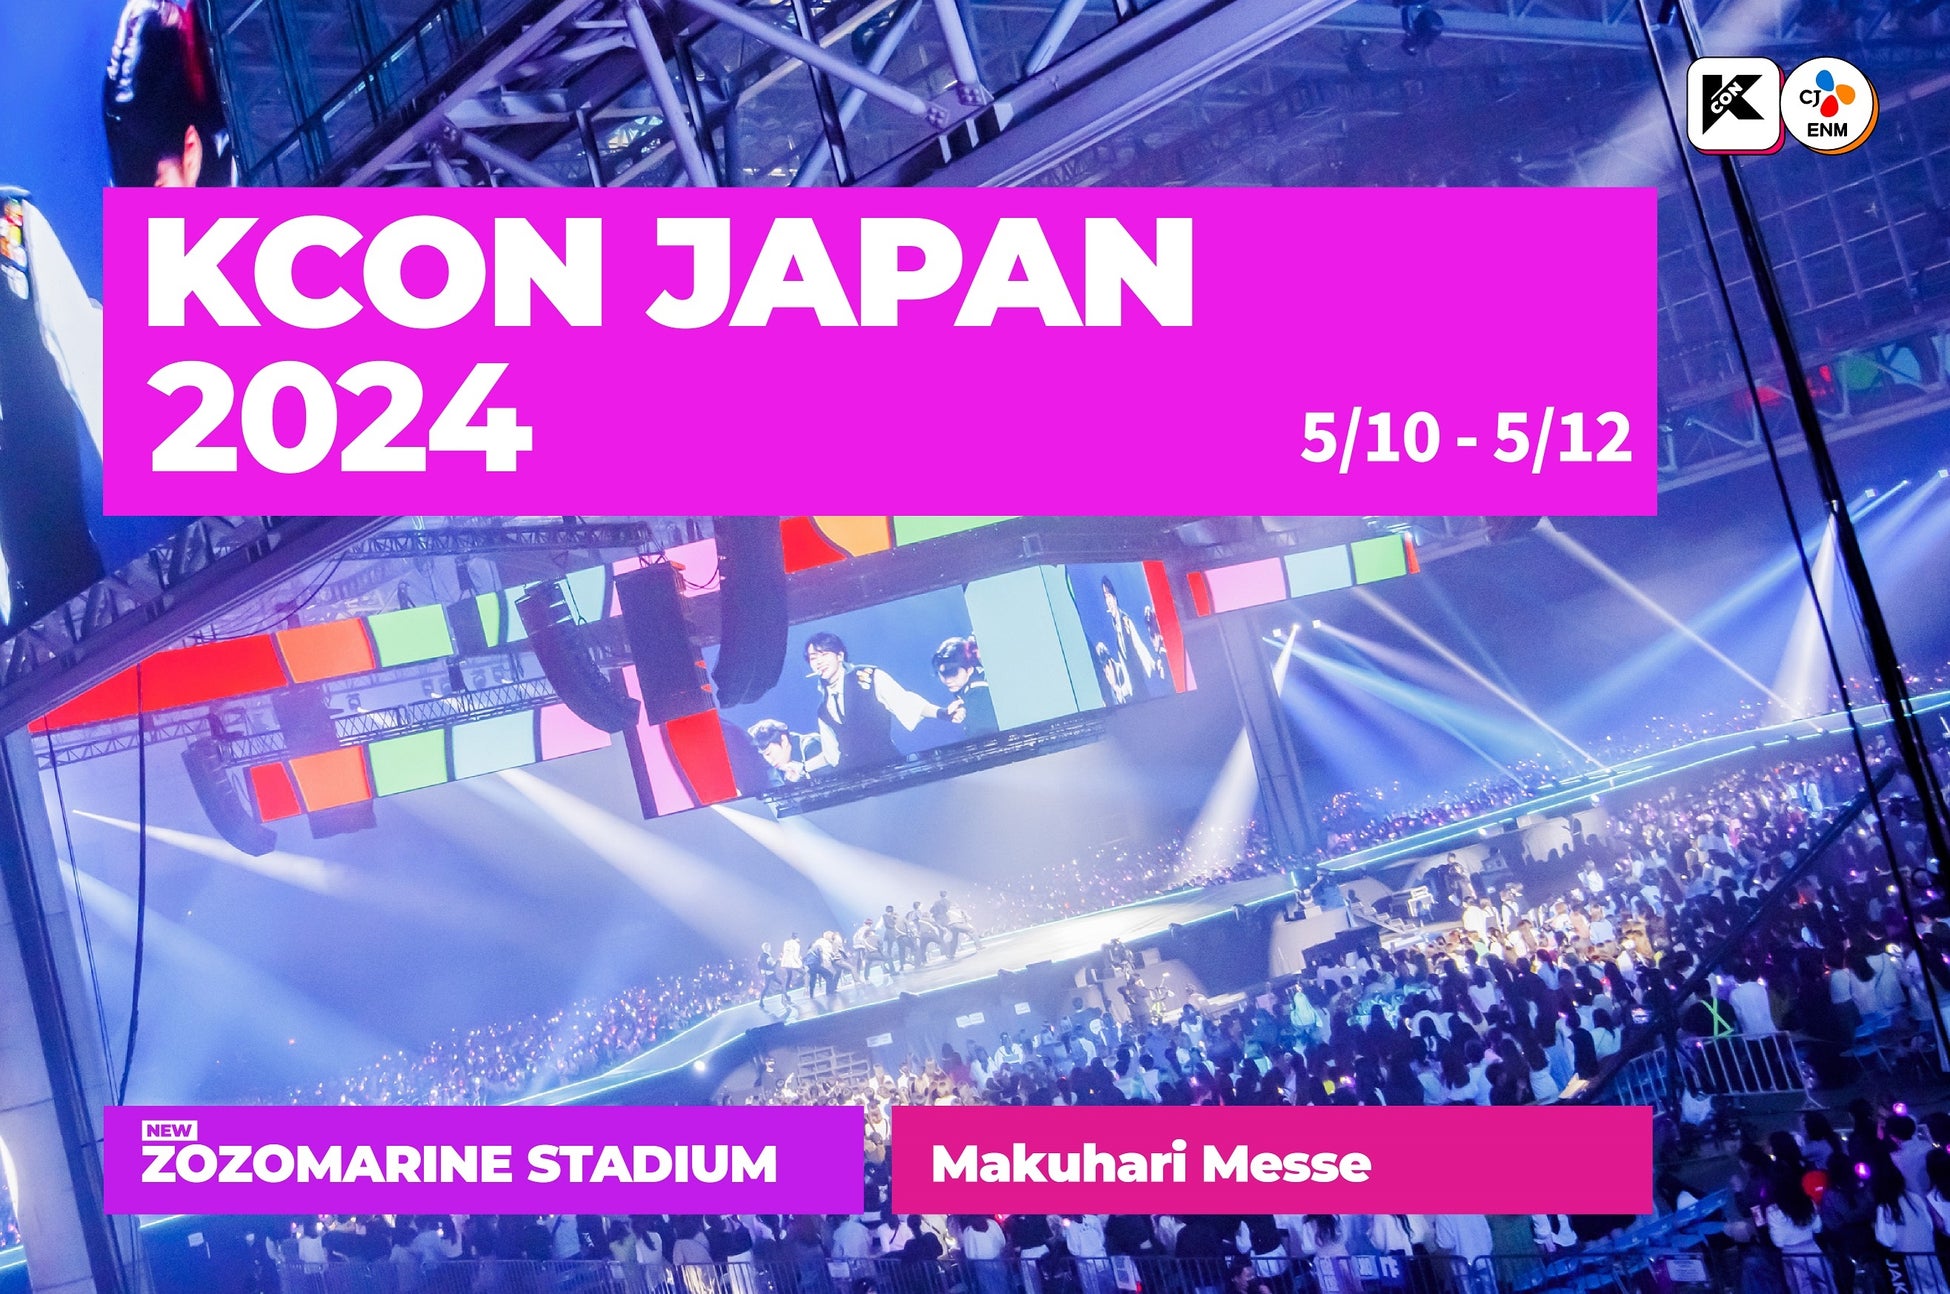 ＜KCON JAPAN 2024＞「K-POP Fan&Artist Festival,KCON」5/10(金)~5/12(日)幕張メッセ、ZOZOマリンスタジアム開催決定！